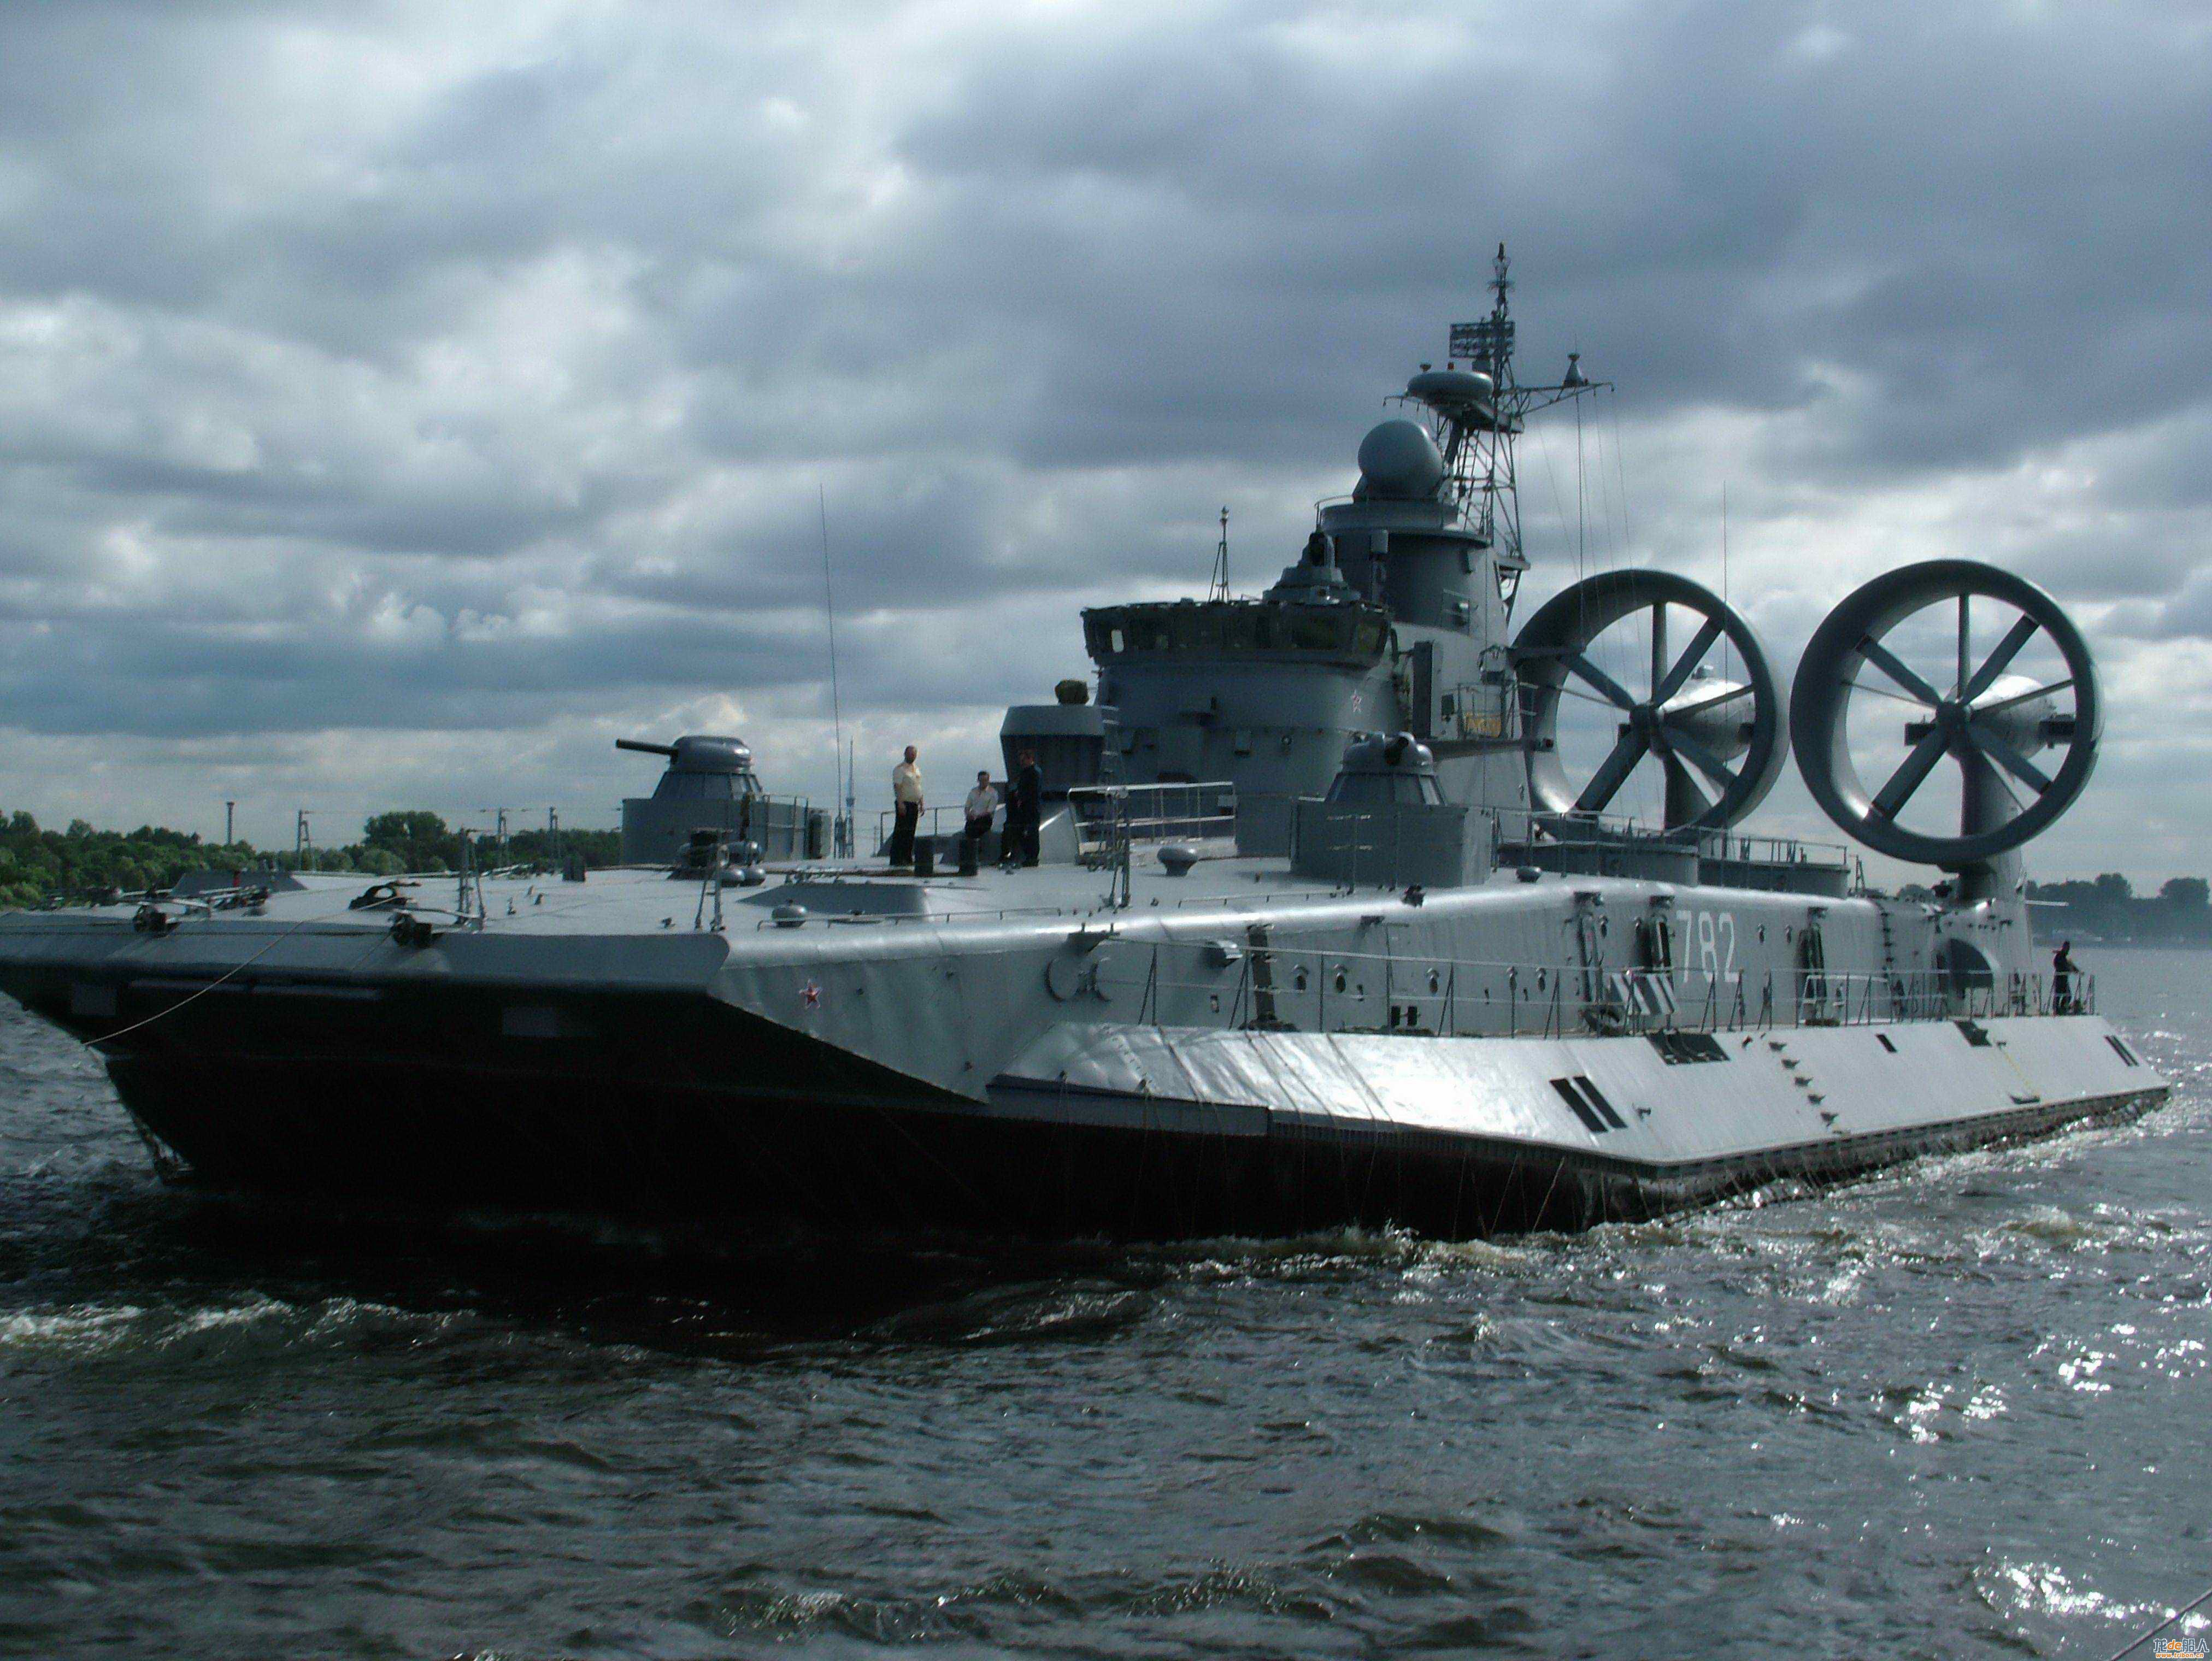 俄罗斯在役的野牛级气垫登陆艇写真集